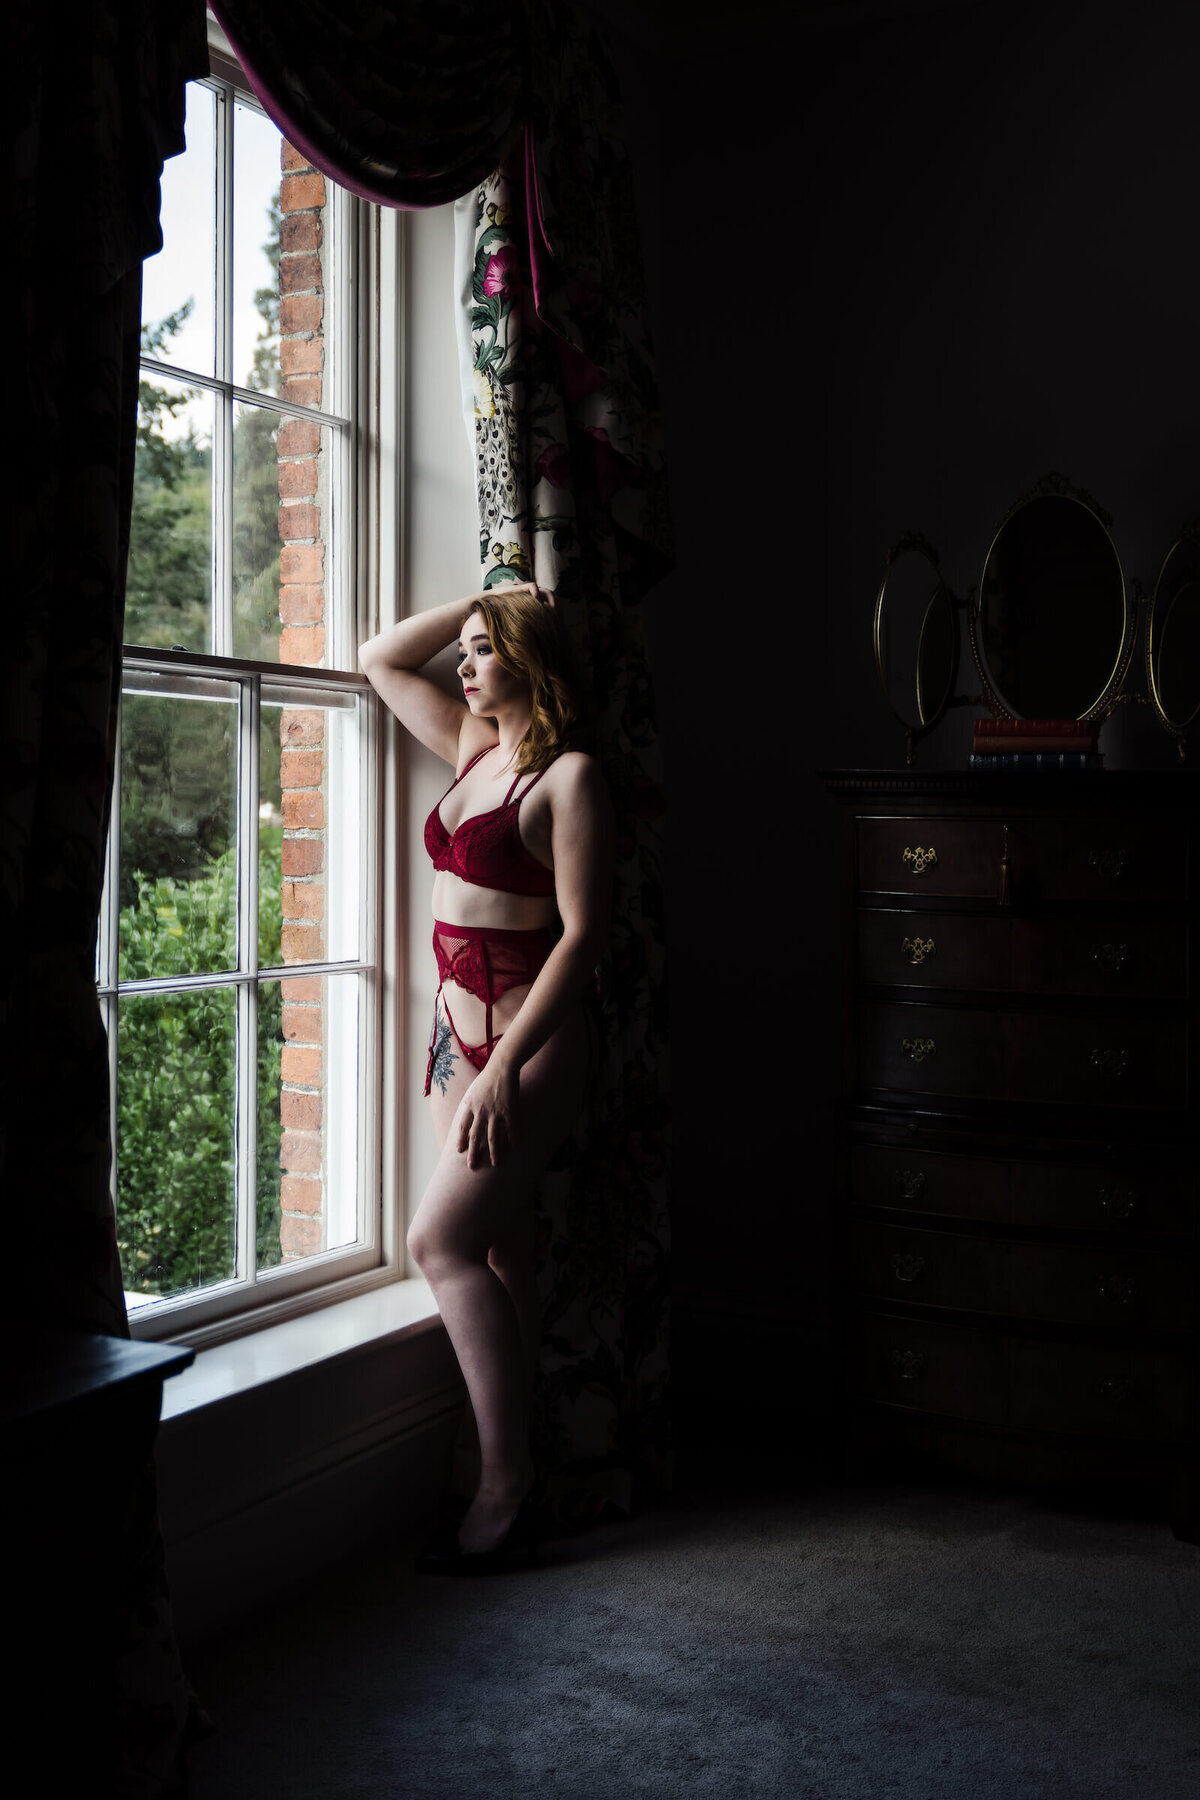 laura-may-photography-uk-boudoir-female-photographer-329